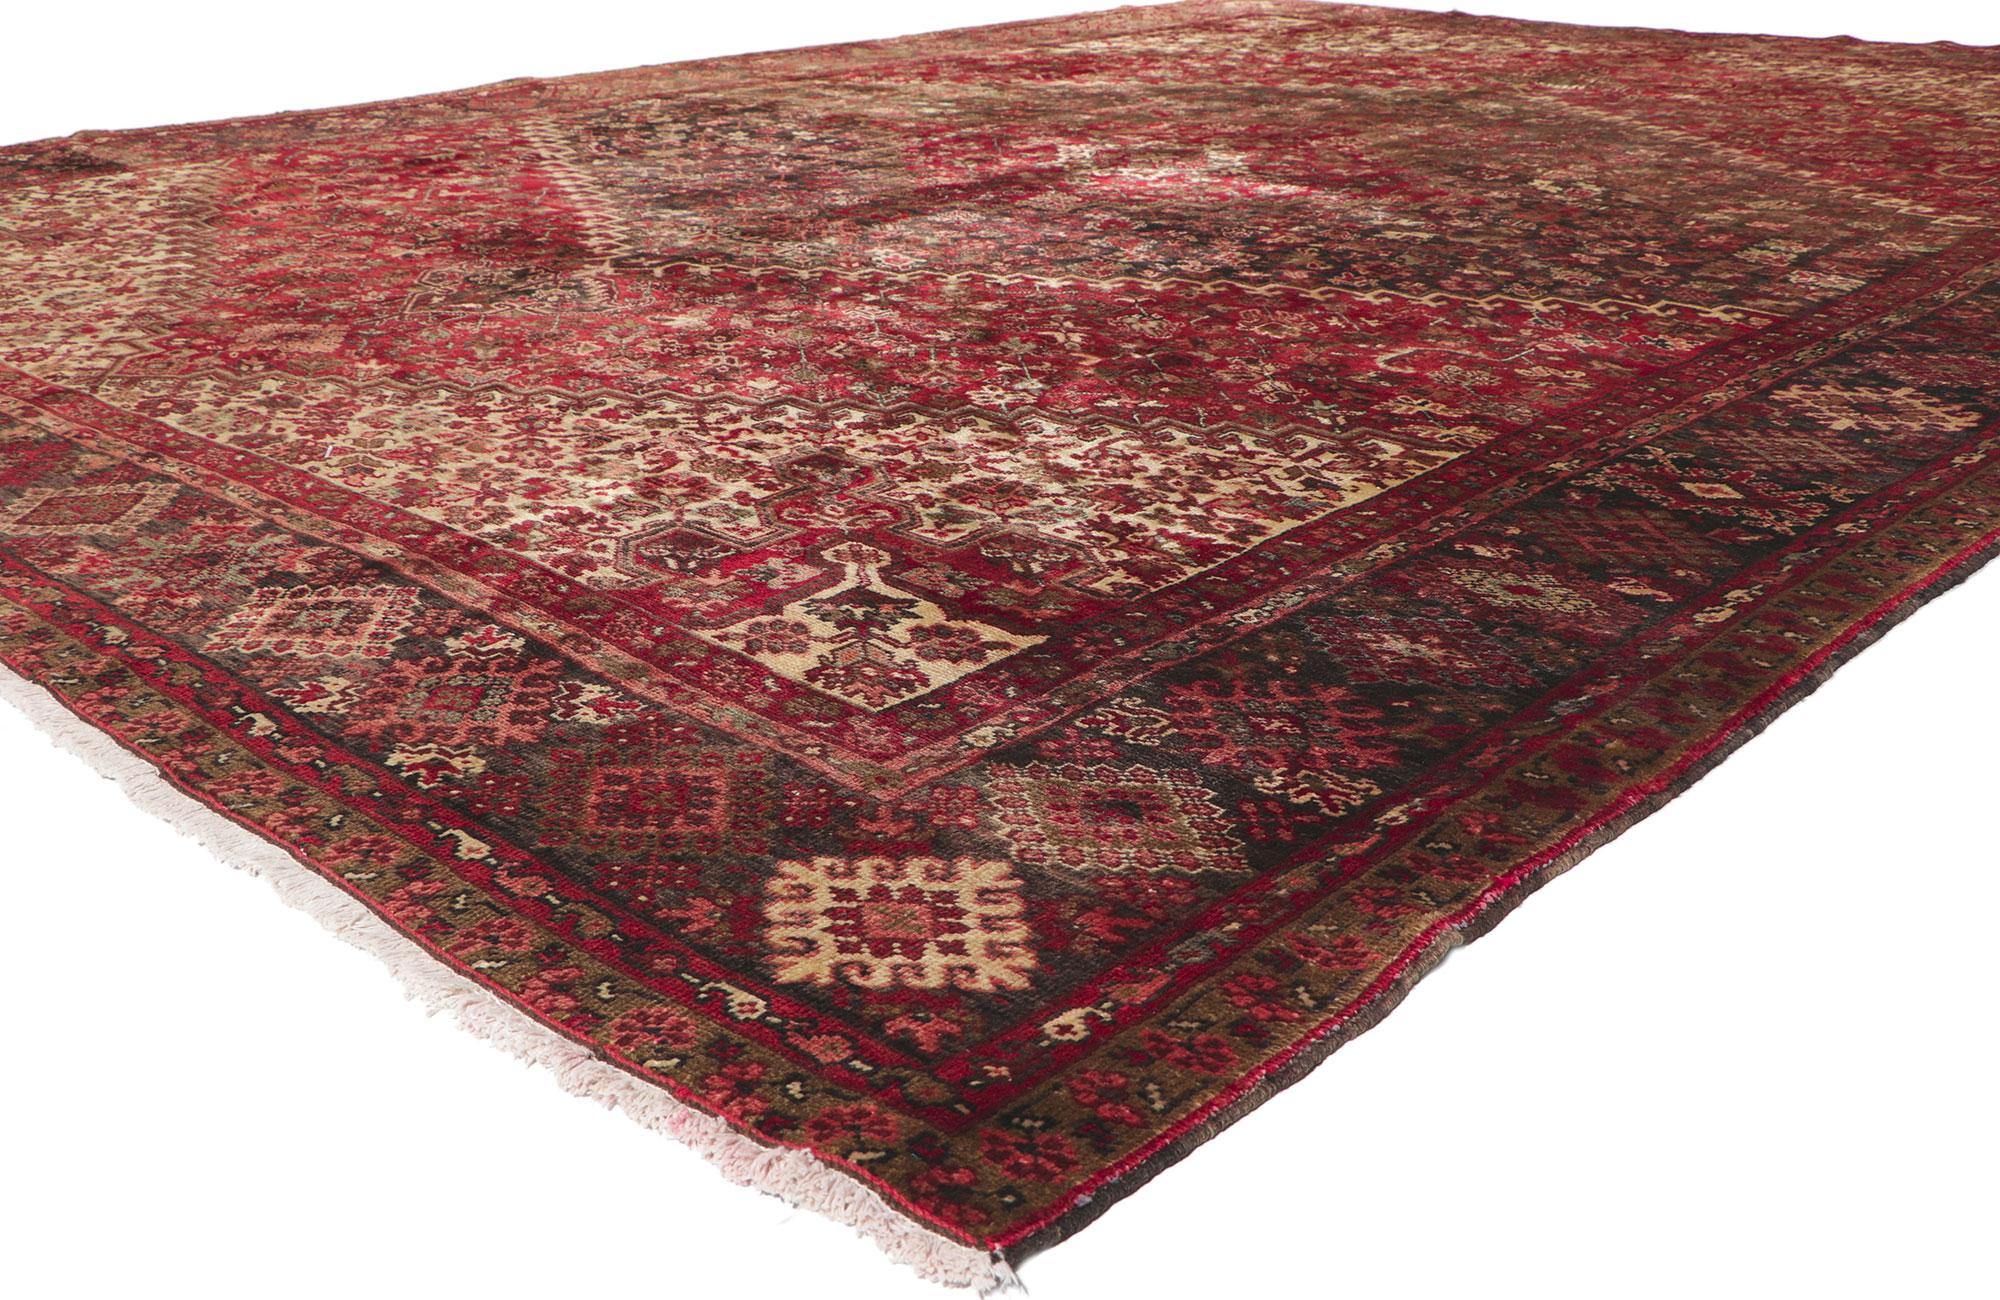 61196 Tapis Persan Vintage Heriz, 11'05 x 14'11. Chaleureux et accueillant dans un style classique, ce tapis Heriz persan vintage en laine noué à la main charme par sa simplicité. Le champ rouge abrasé présente un médaillon concentrique entouré d'un